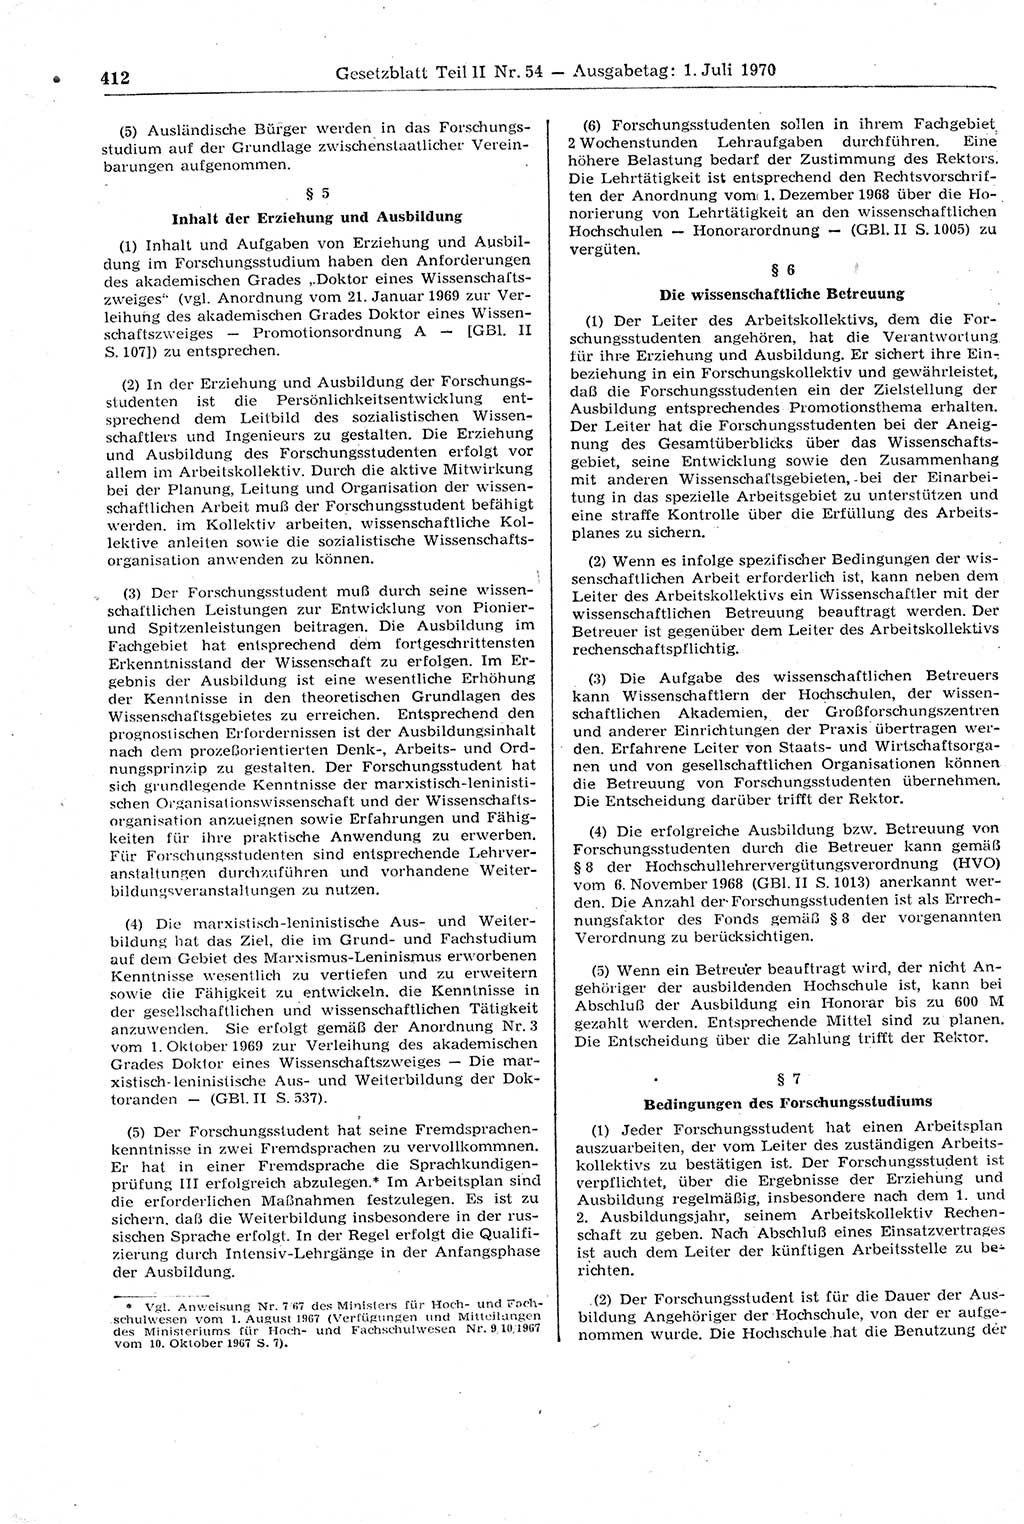 Gesetzblatt (GBl.) der Deutschen Demokratischen Republik (DDR) Teil ⅠⅠ 1970, Seite 412 (GBl. DDR ⅠⅠ 1970, S. 412)